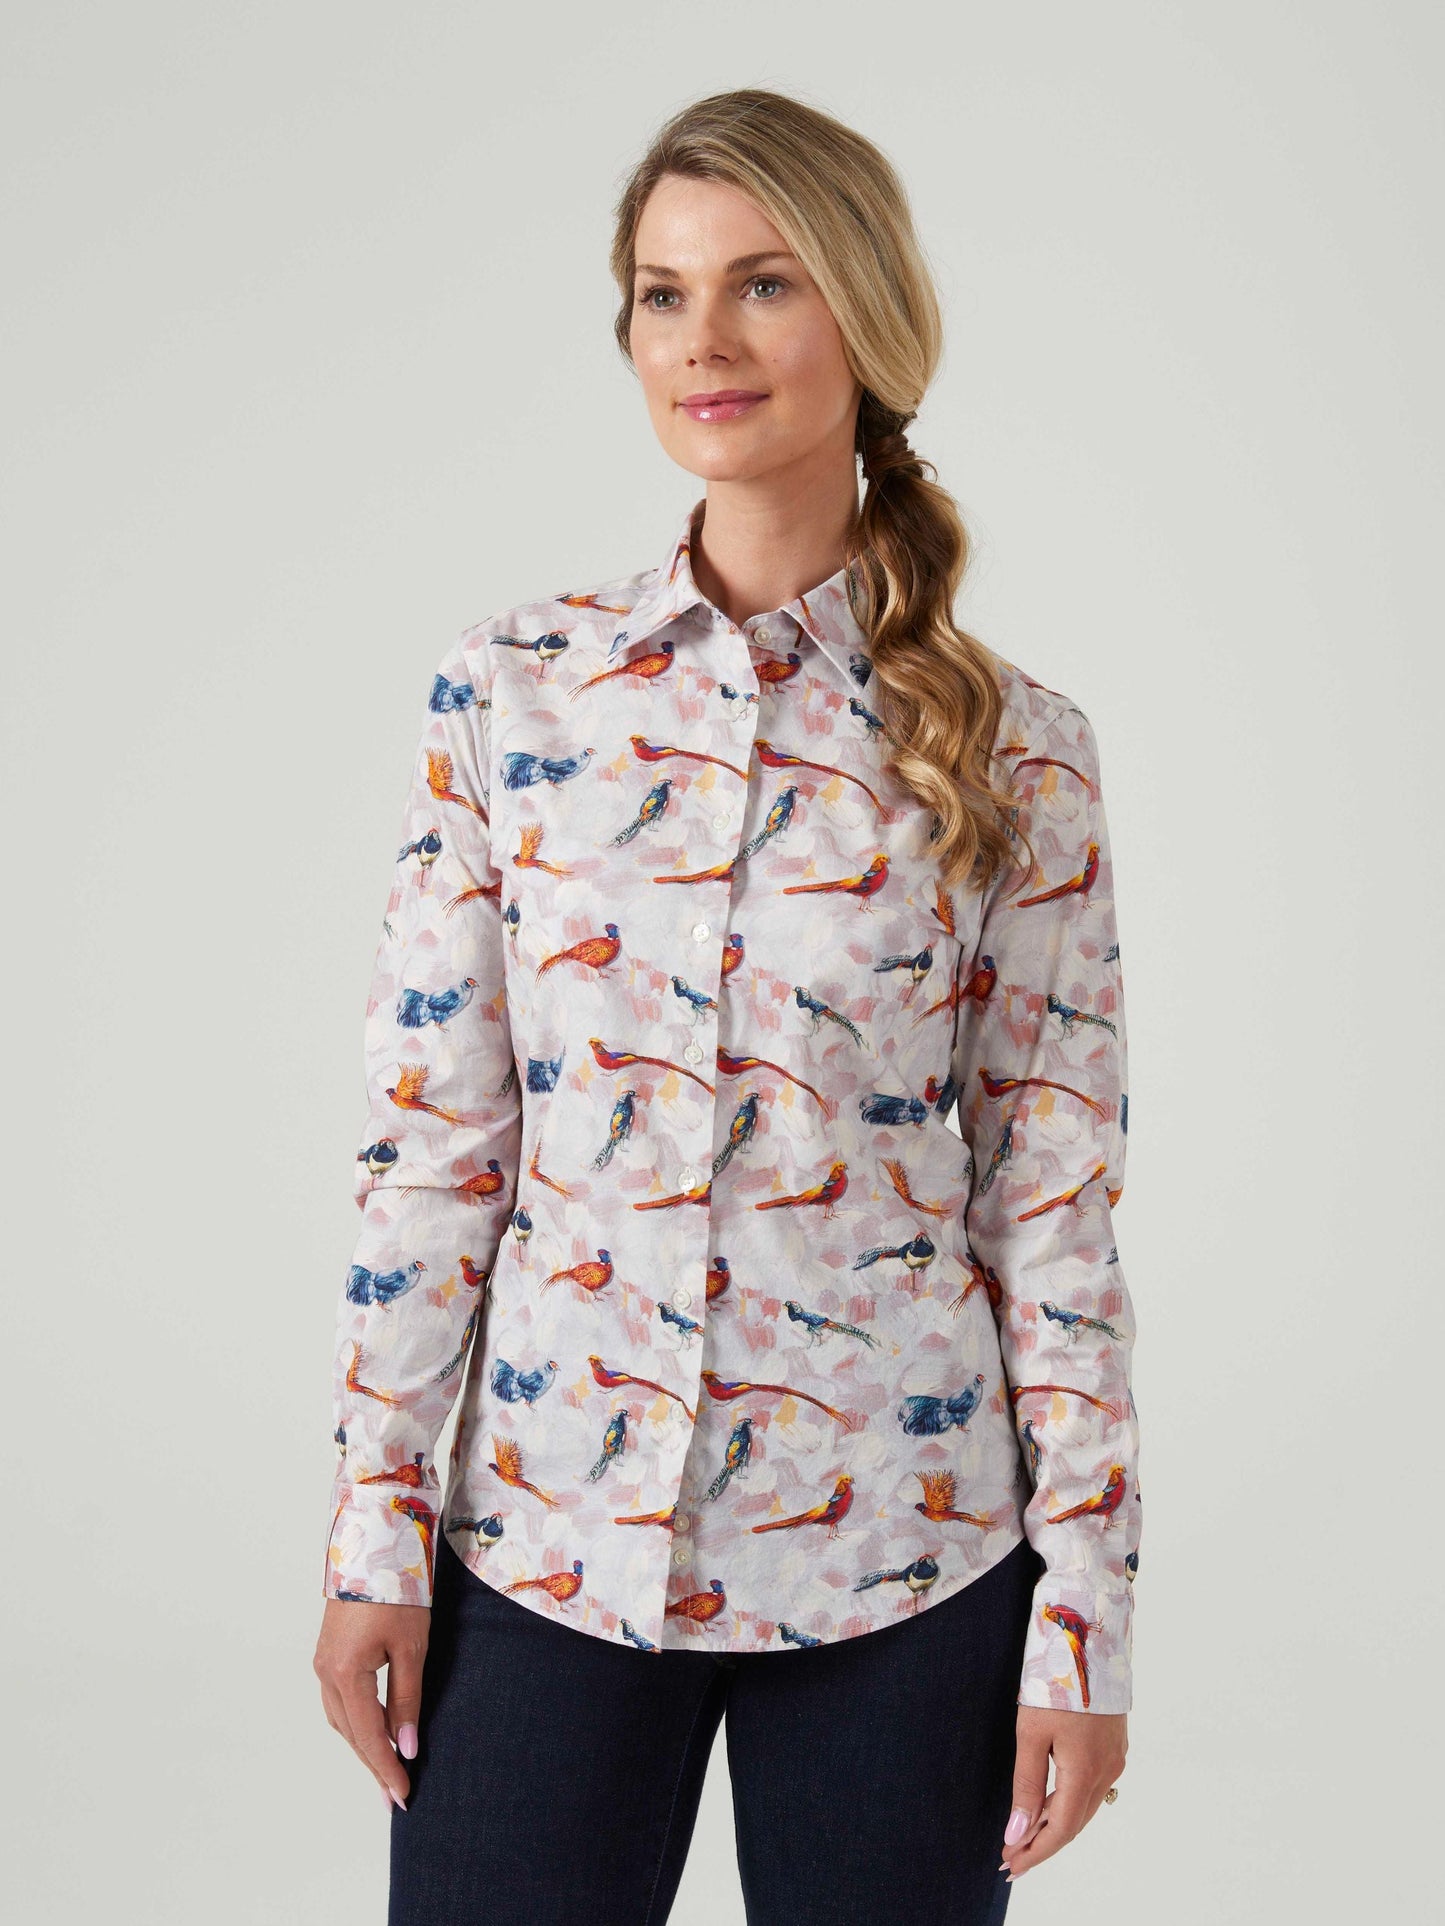 Ladies cotton shirt with bird design.